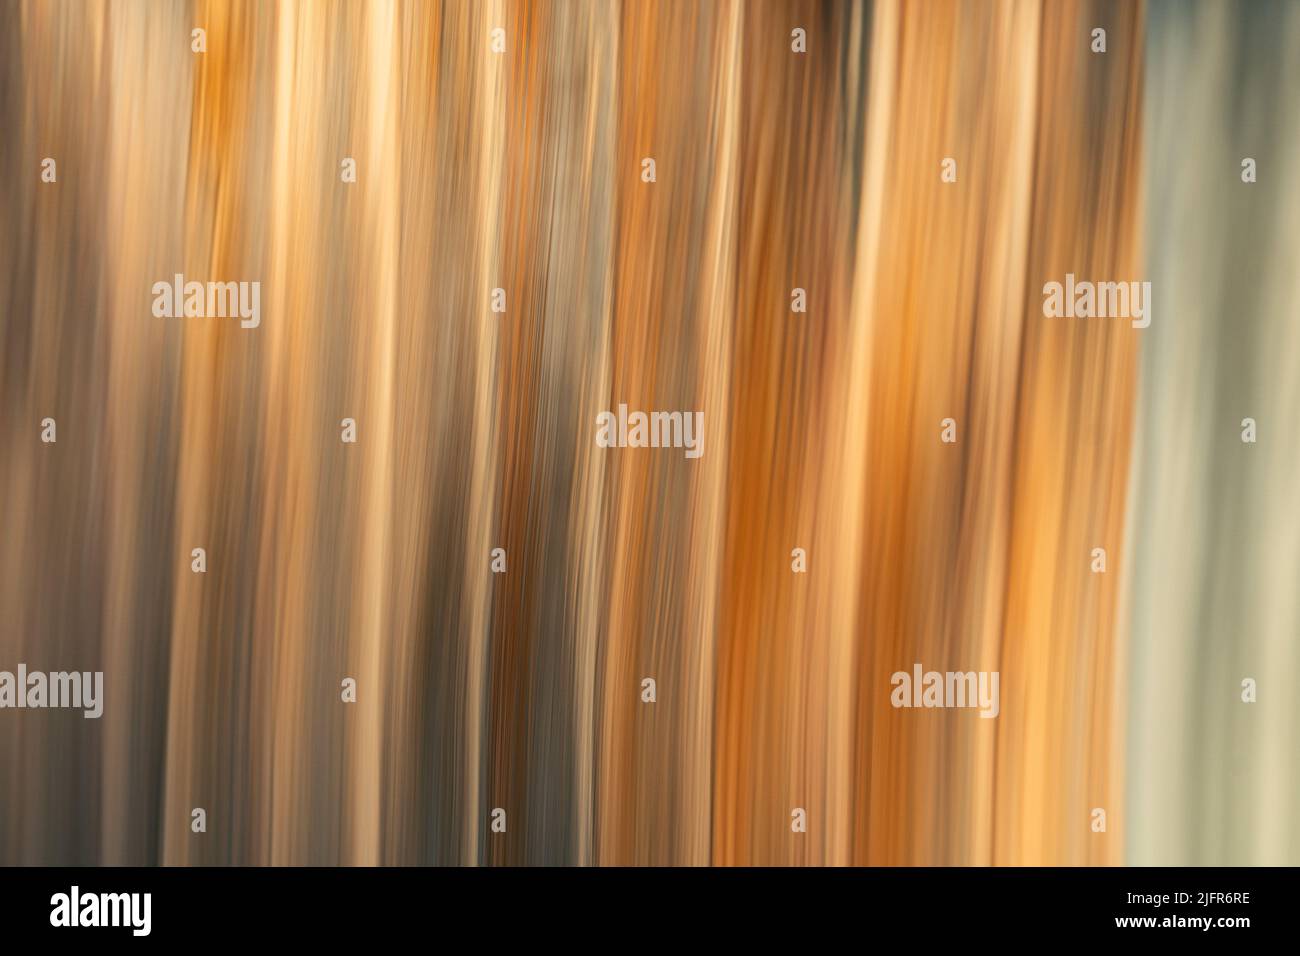 Image ICM linéaire abstraite (mouvement intentionnel de la caméra) dans des tons ocre dorés Banque D'Images